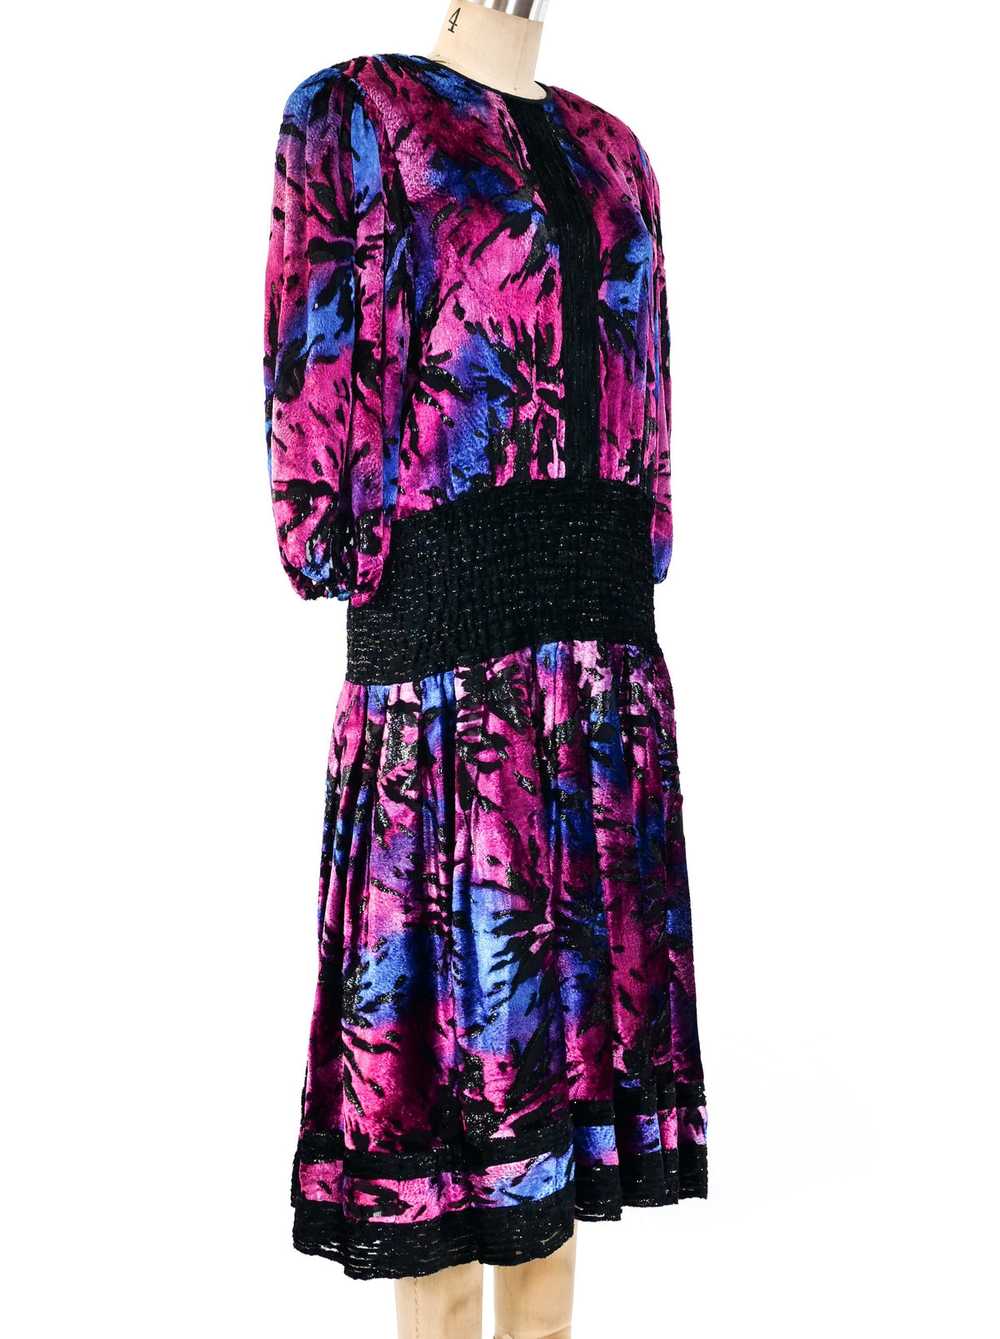 Diane Freis Devore Velvet Ombre Dress - image 2